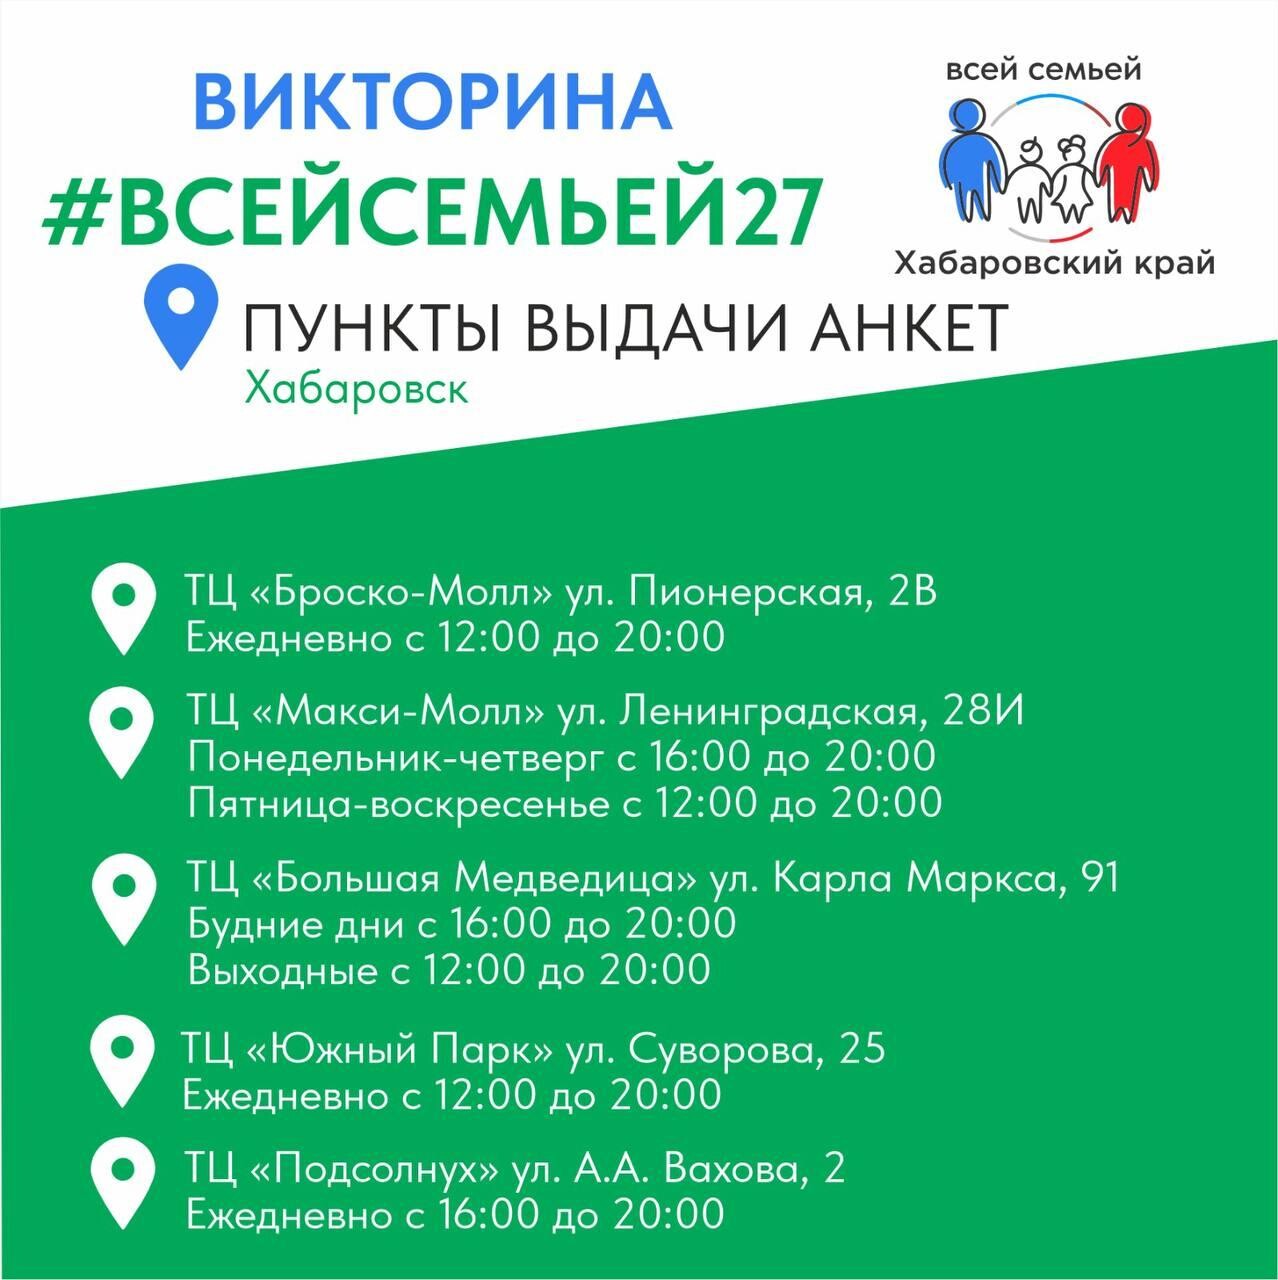 Пункты выдачи анкет для участия в викторине #ВСЕЙСЕМЬЕЙ27 открылись в Хабаровском крае